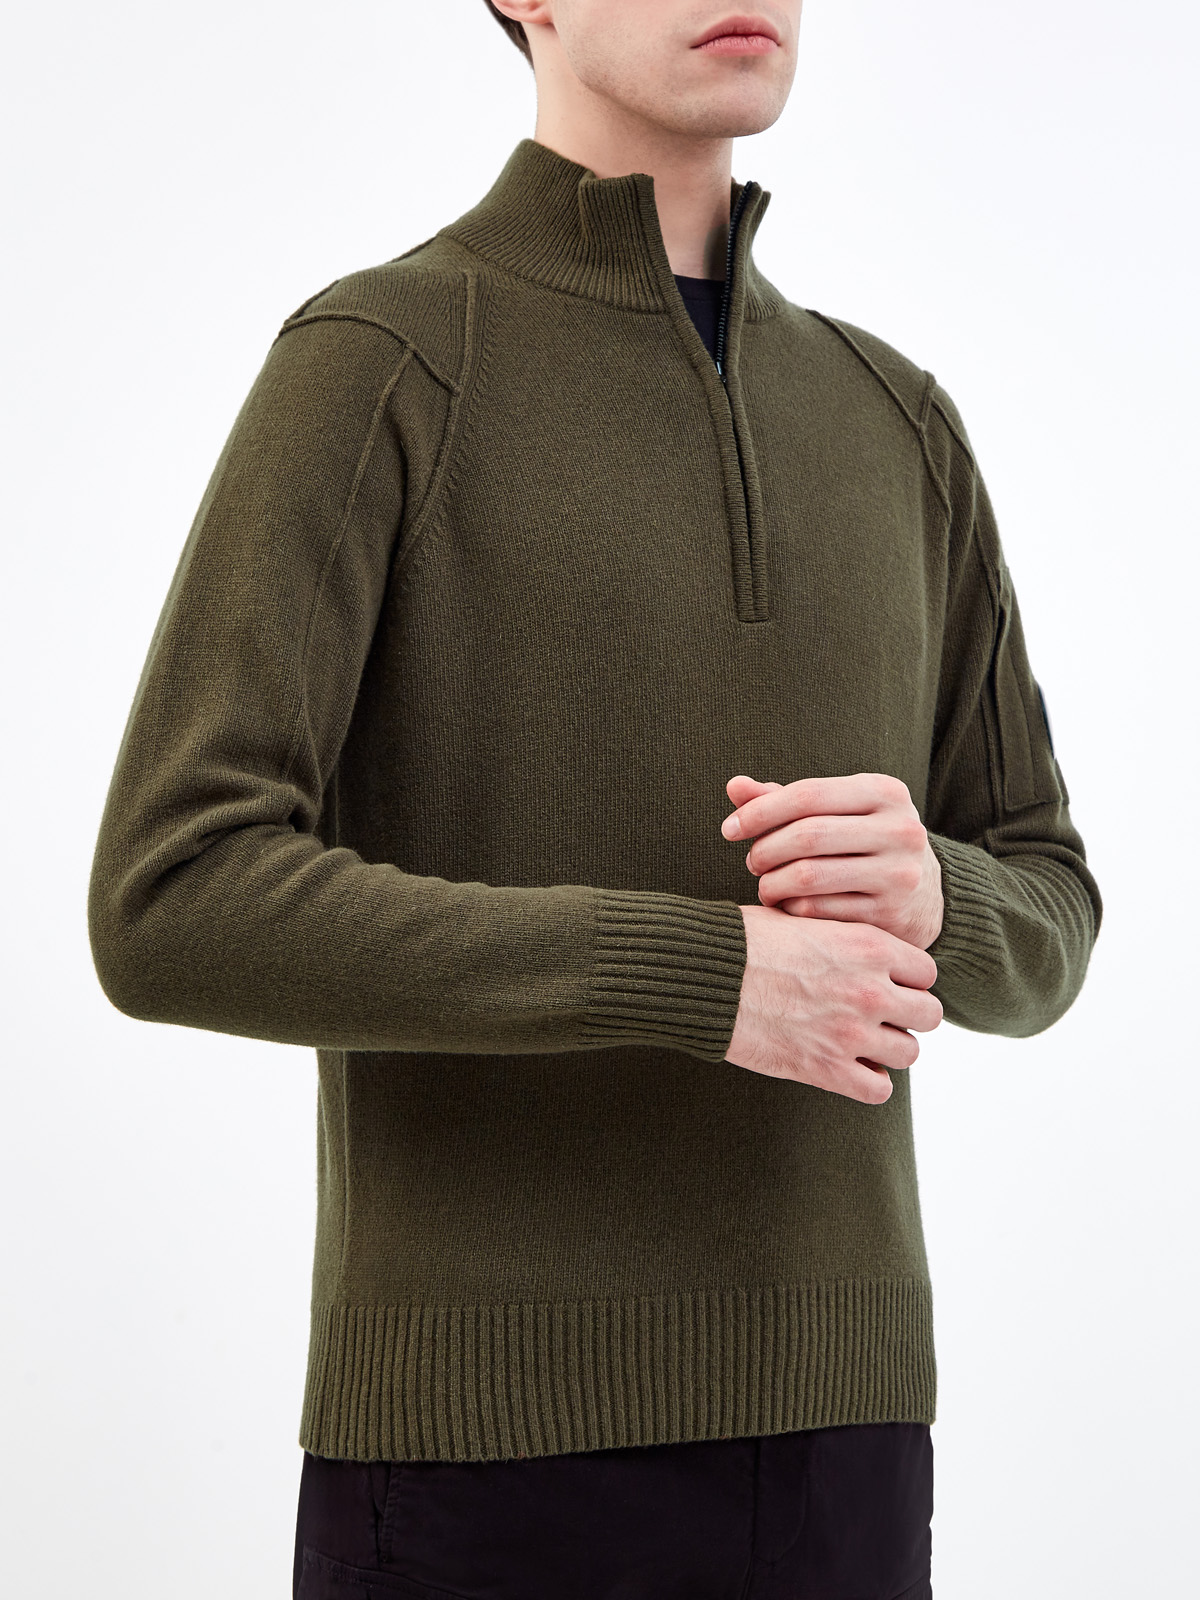 Шерстяной свитер с фактурными швами и застежкой на молнию C.P.COMPANY, цвет зеленый, размер L;XL;2XL;M - фото 3